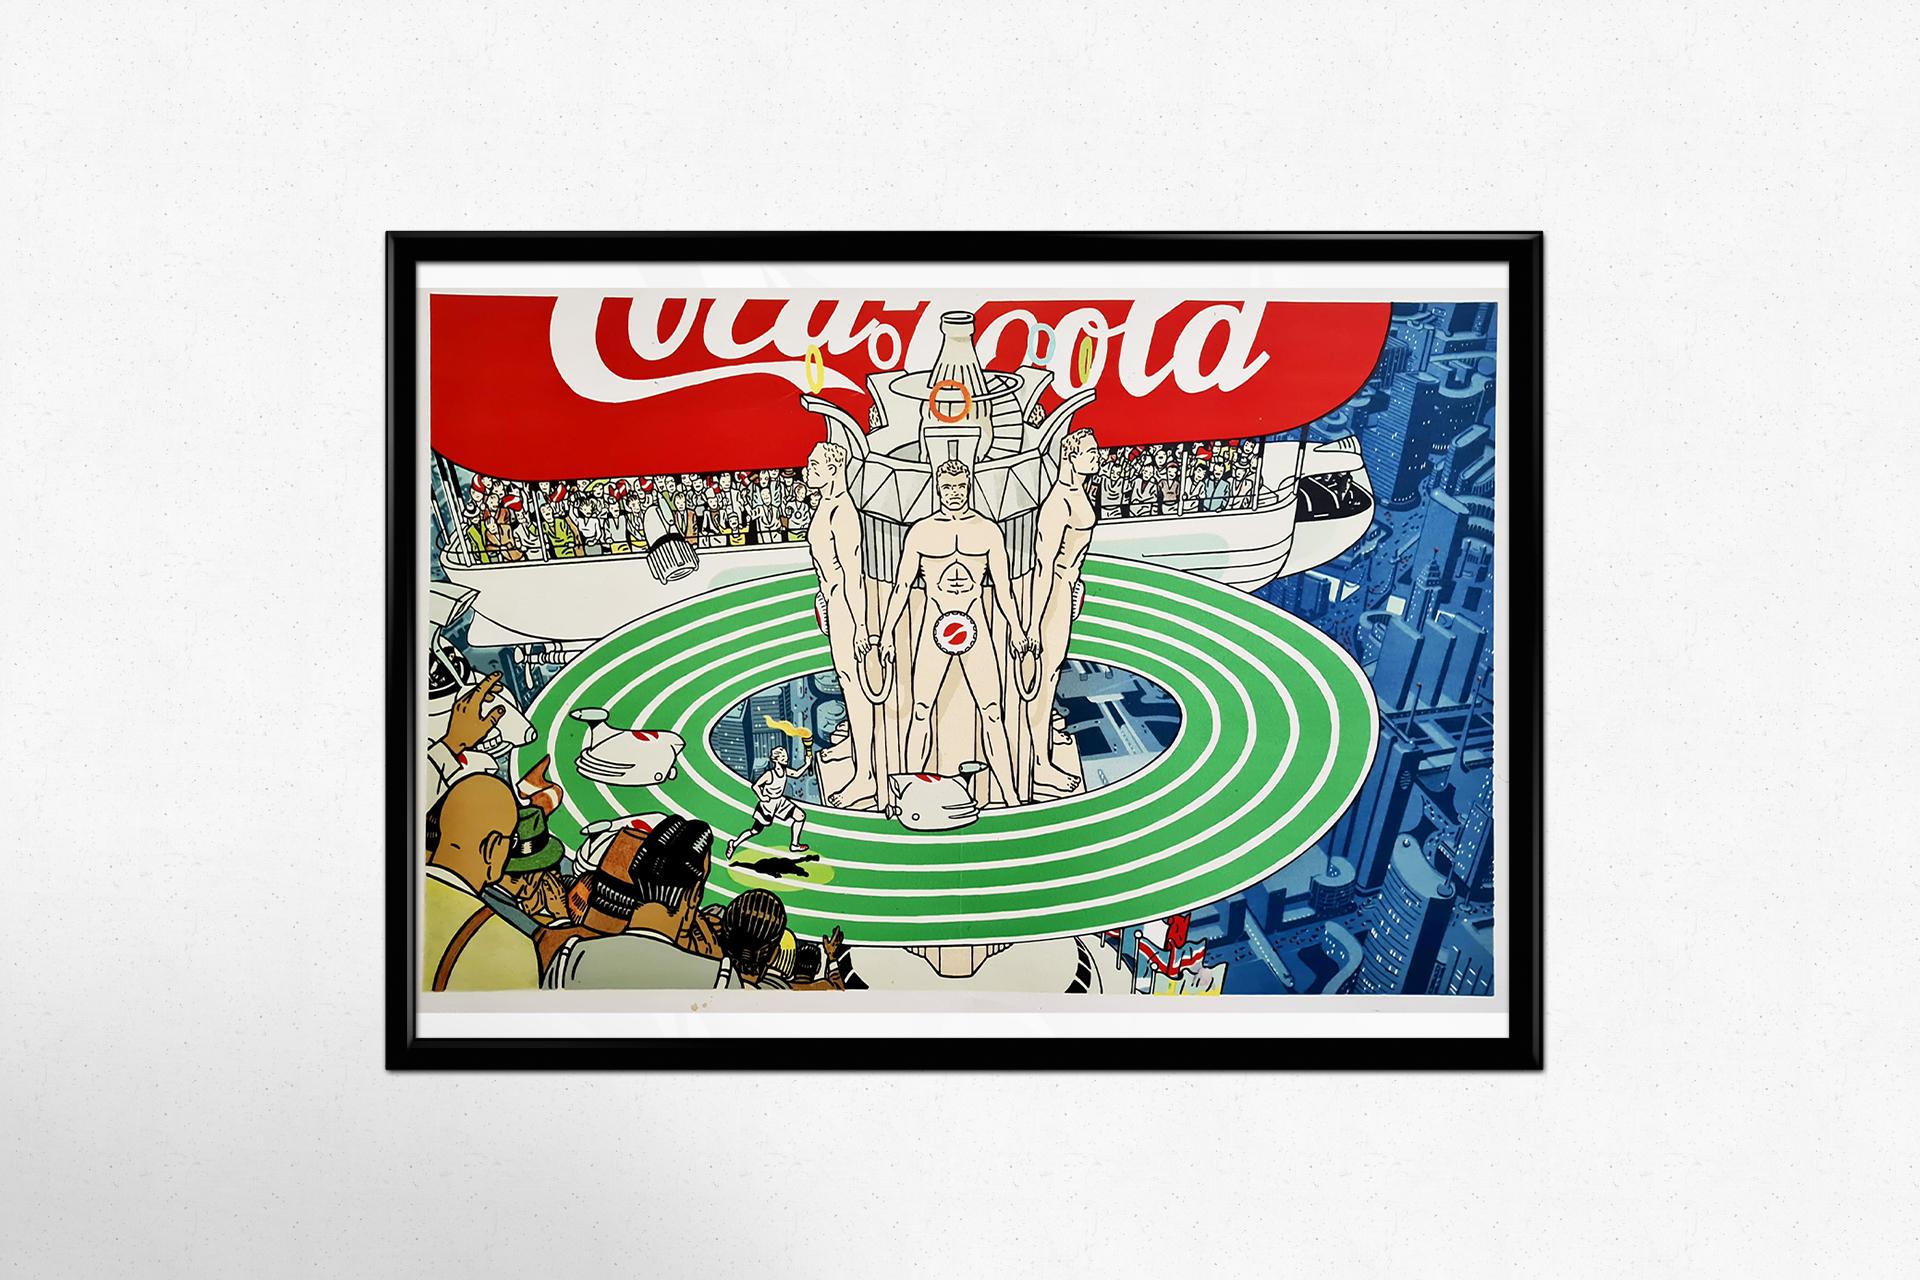 Une très belle affiche, au look futuriste réalisée à la demande de Coca-Cola pour célébrer les Jeux de la XXIIIe Olympiade, c'est-à-dire les Jeux olympiques d'été de 1984 qui se sont déroulés à Los Angeles.

Jeux Olympiques - Gastronomie - Sport -